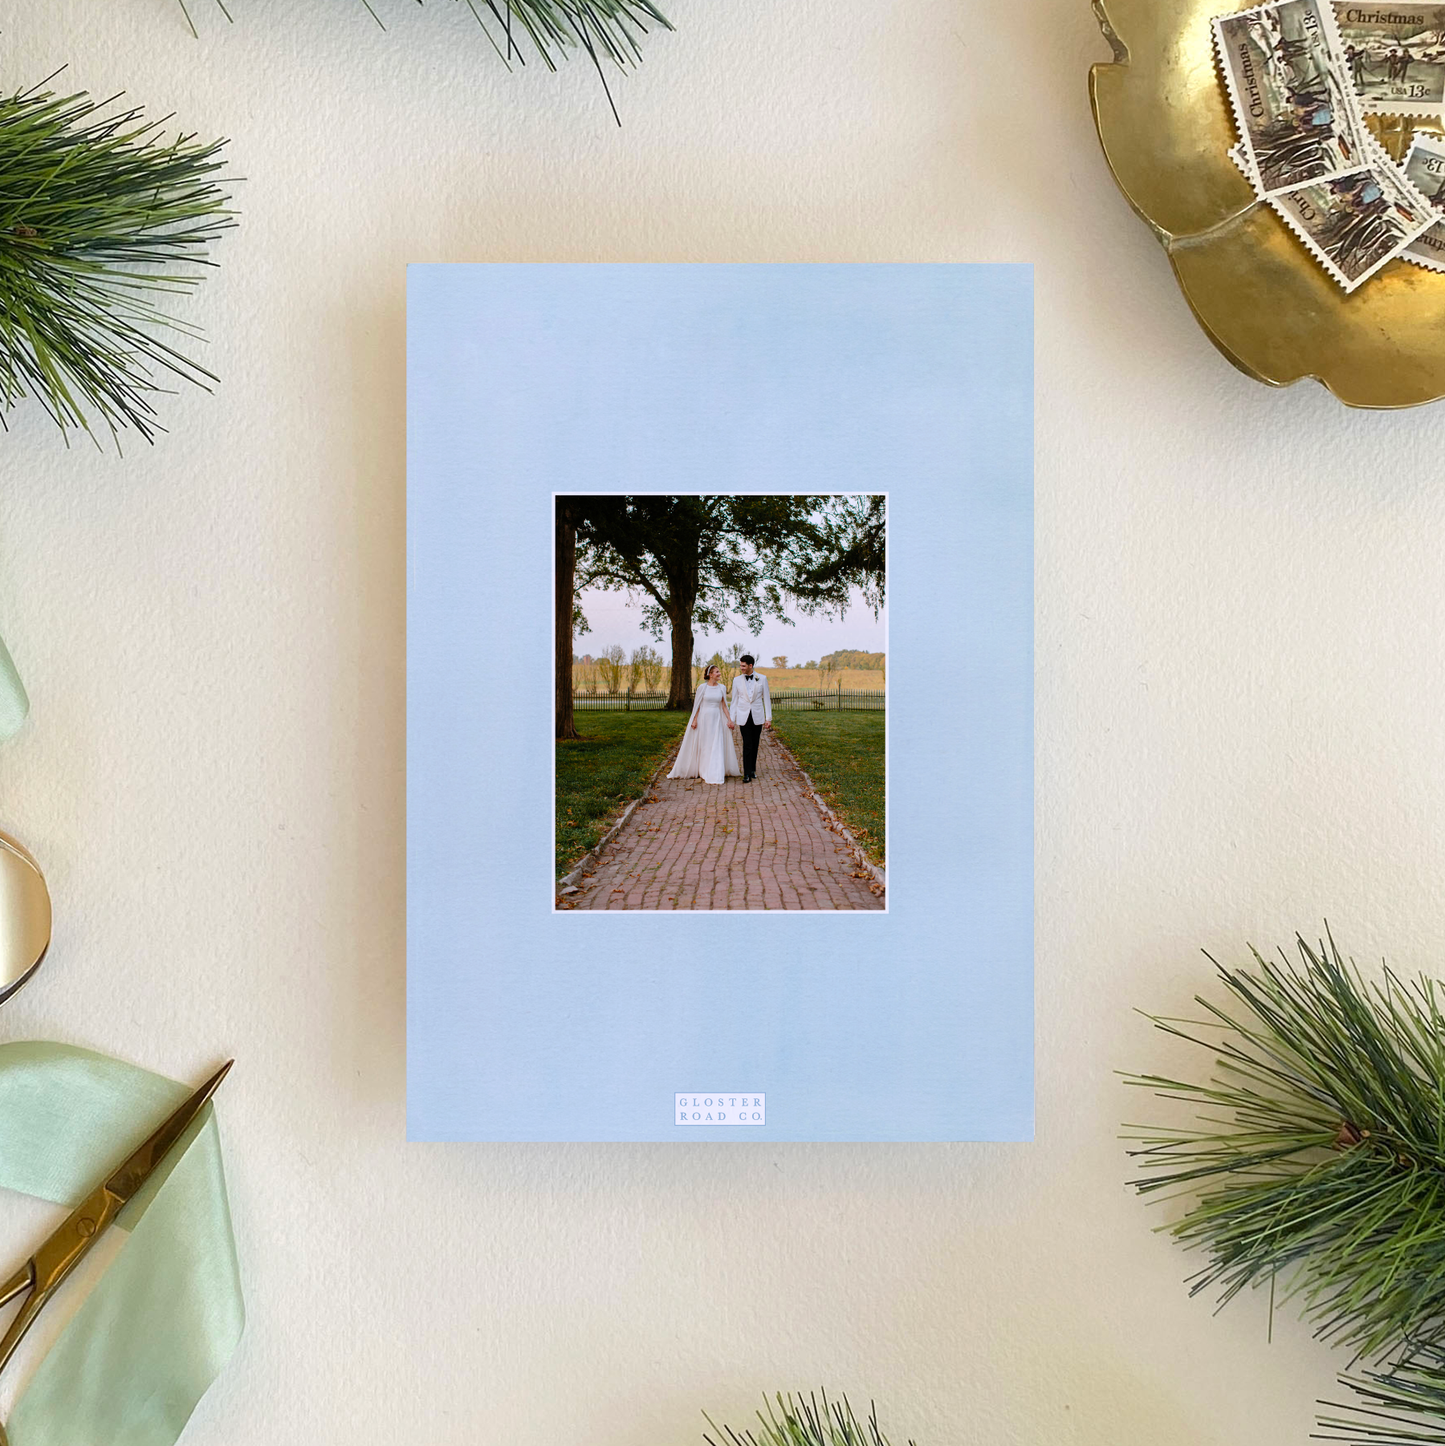 Poinsettia Wreath Frame Holiday Card, Portrait